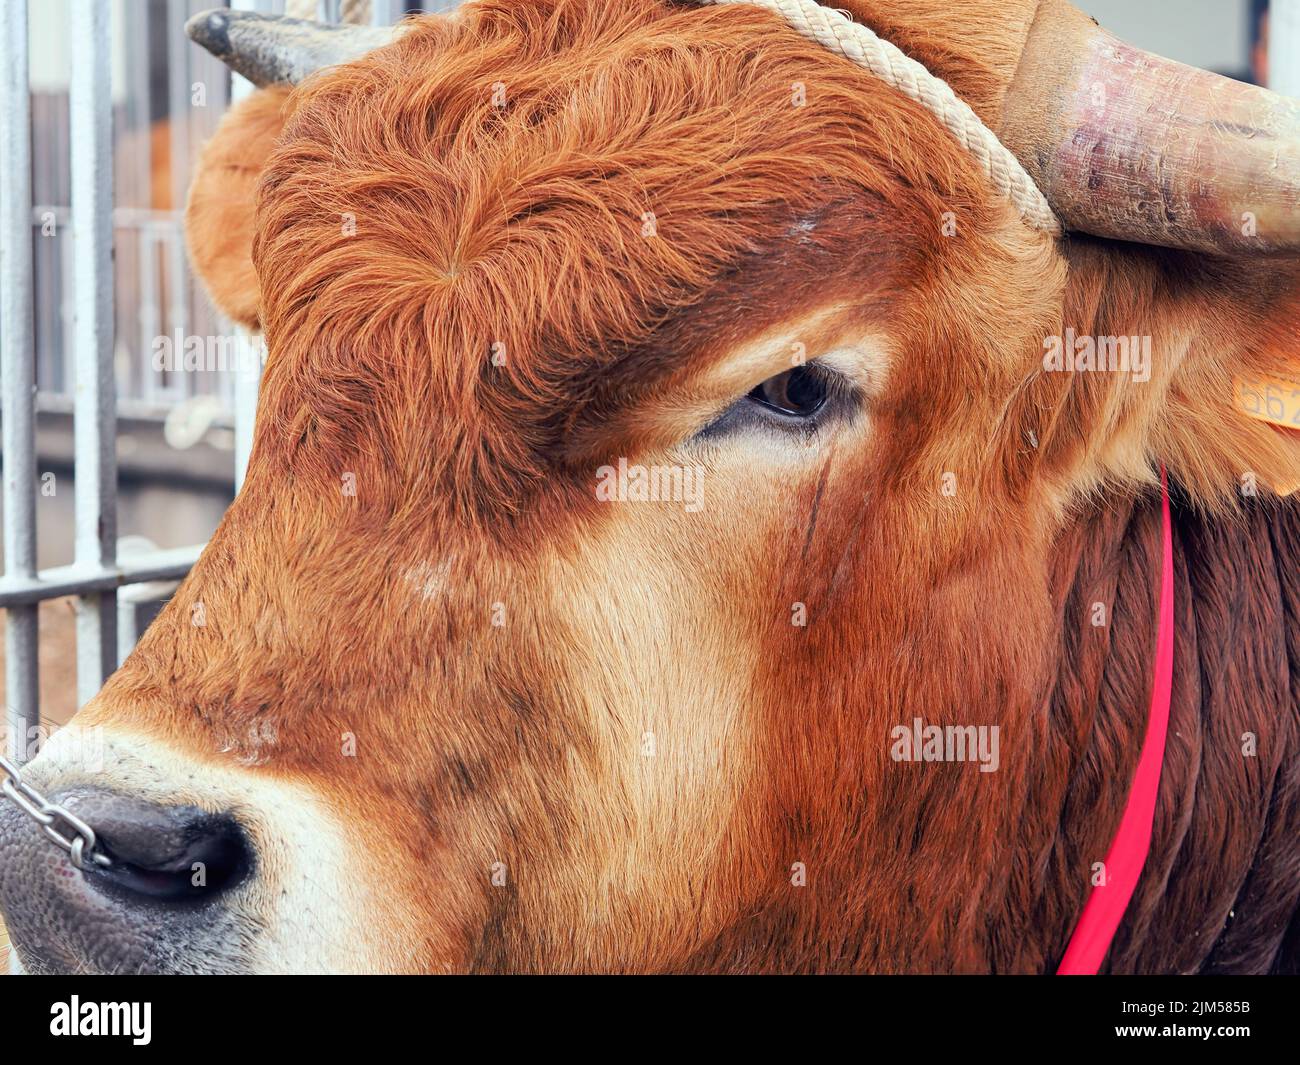 Gros plan d'un jeune taureau brun avec des cheveux de front bouclés, chaîne dans le nez, corde autour des cornes. Banque D'Images